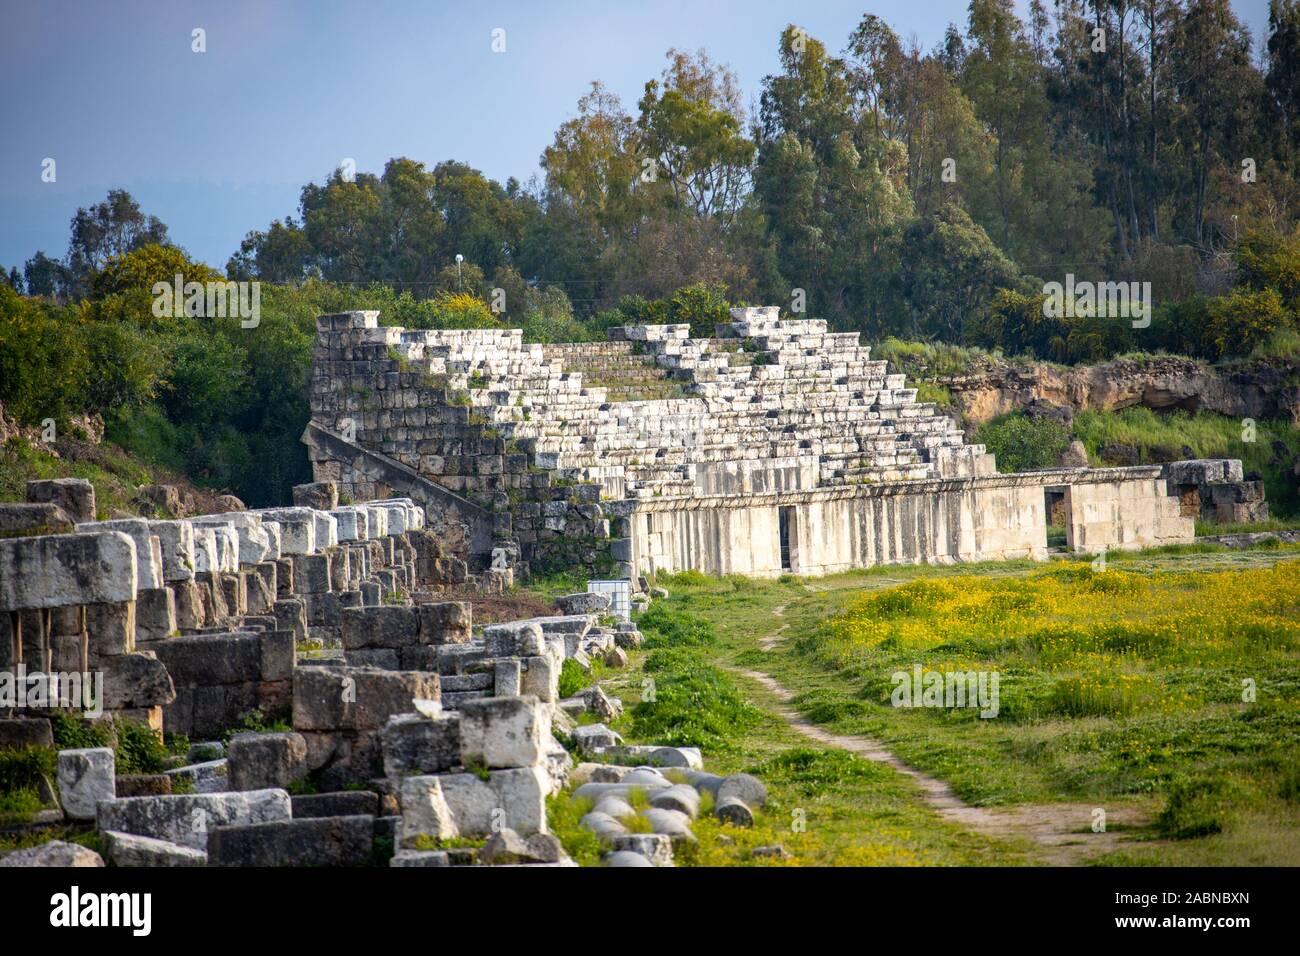 El hipódromo, al sitio arqueológico de Bass, Tiro, Líbano Foto de stock